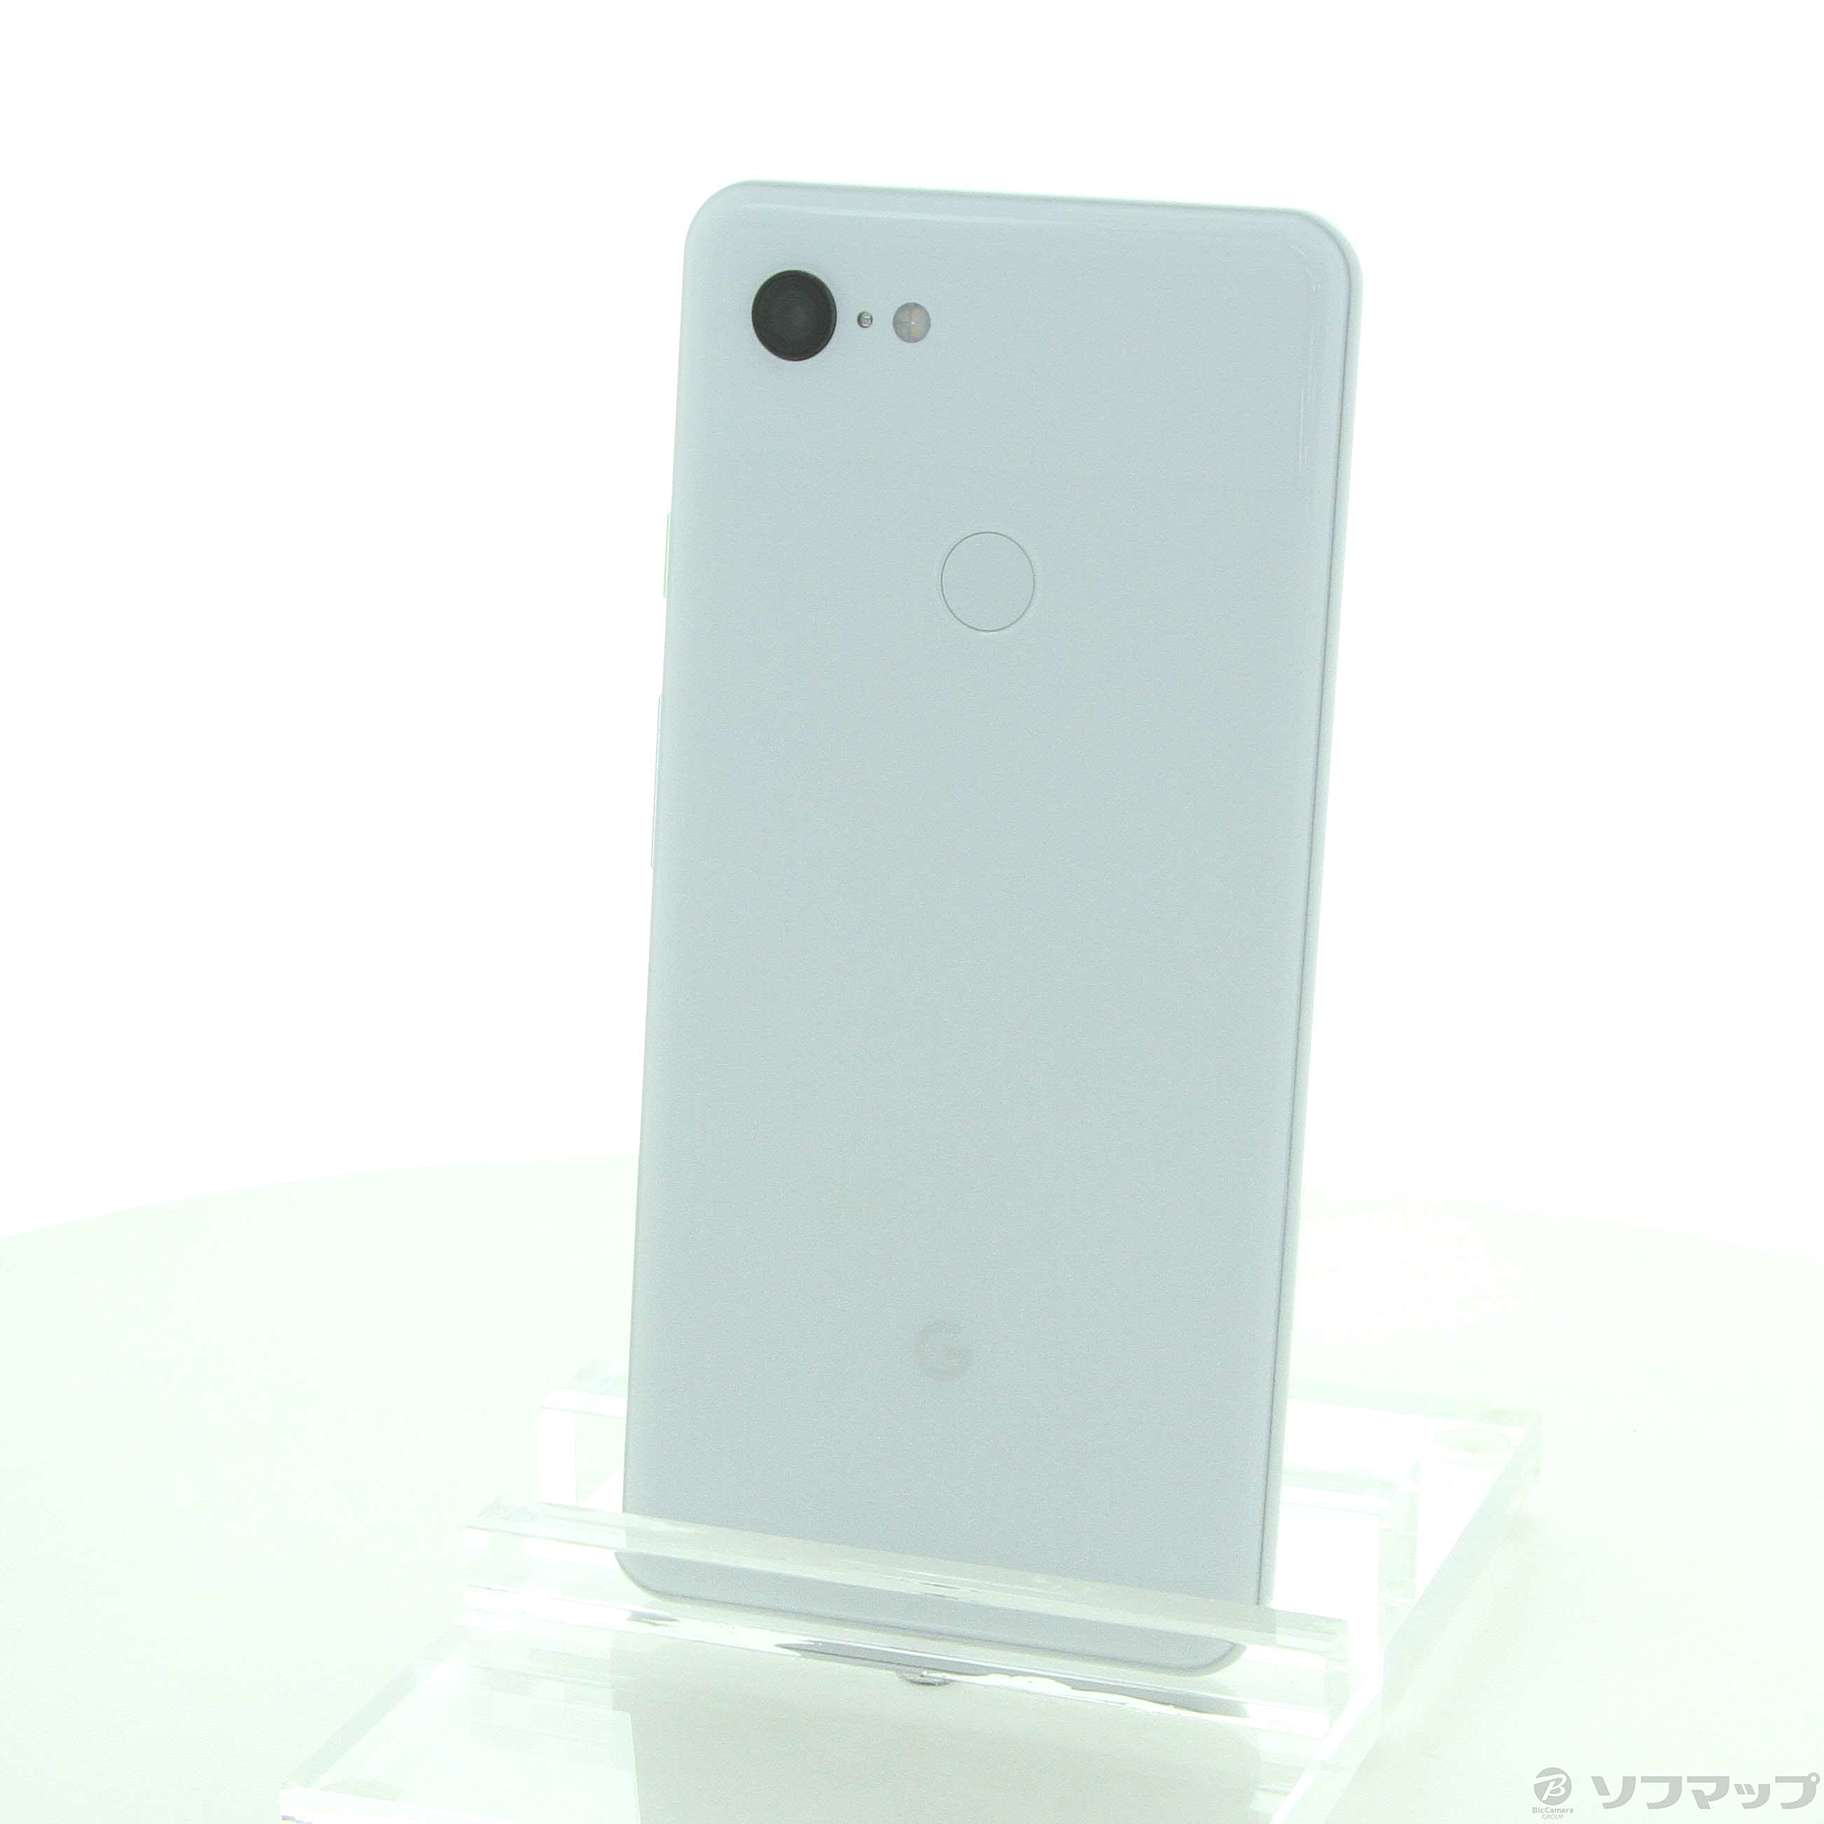 セール対象品 Google Pixel 3 XL 64GB クリアリーホワイト G013D SIMフリー